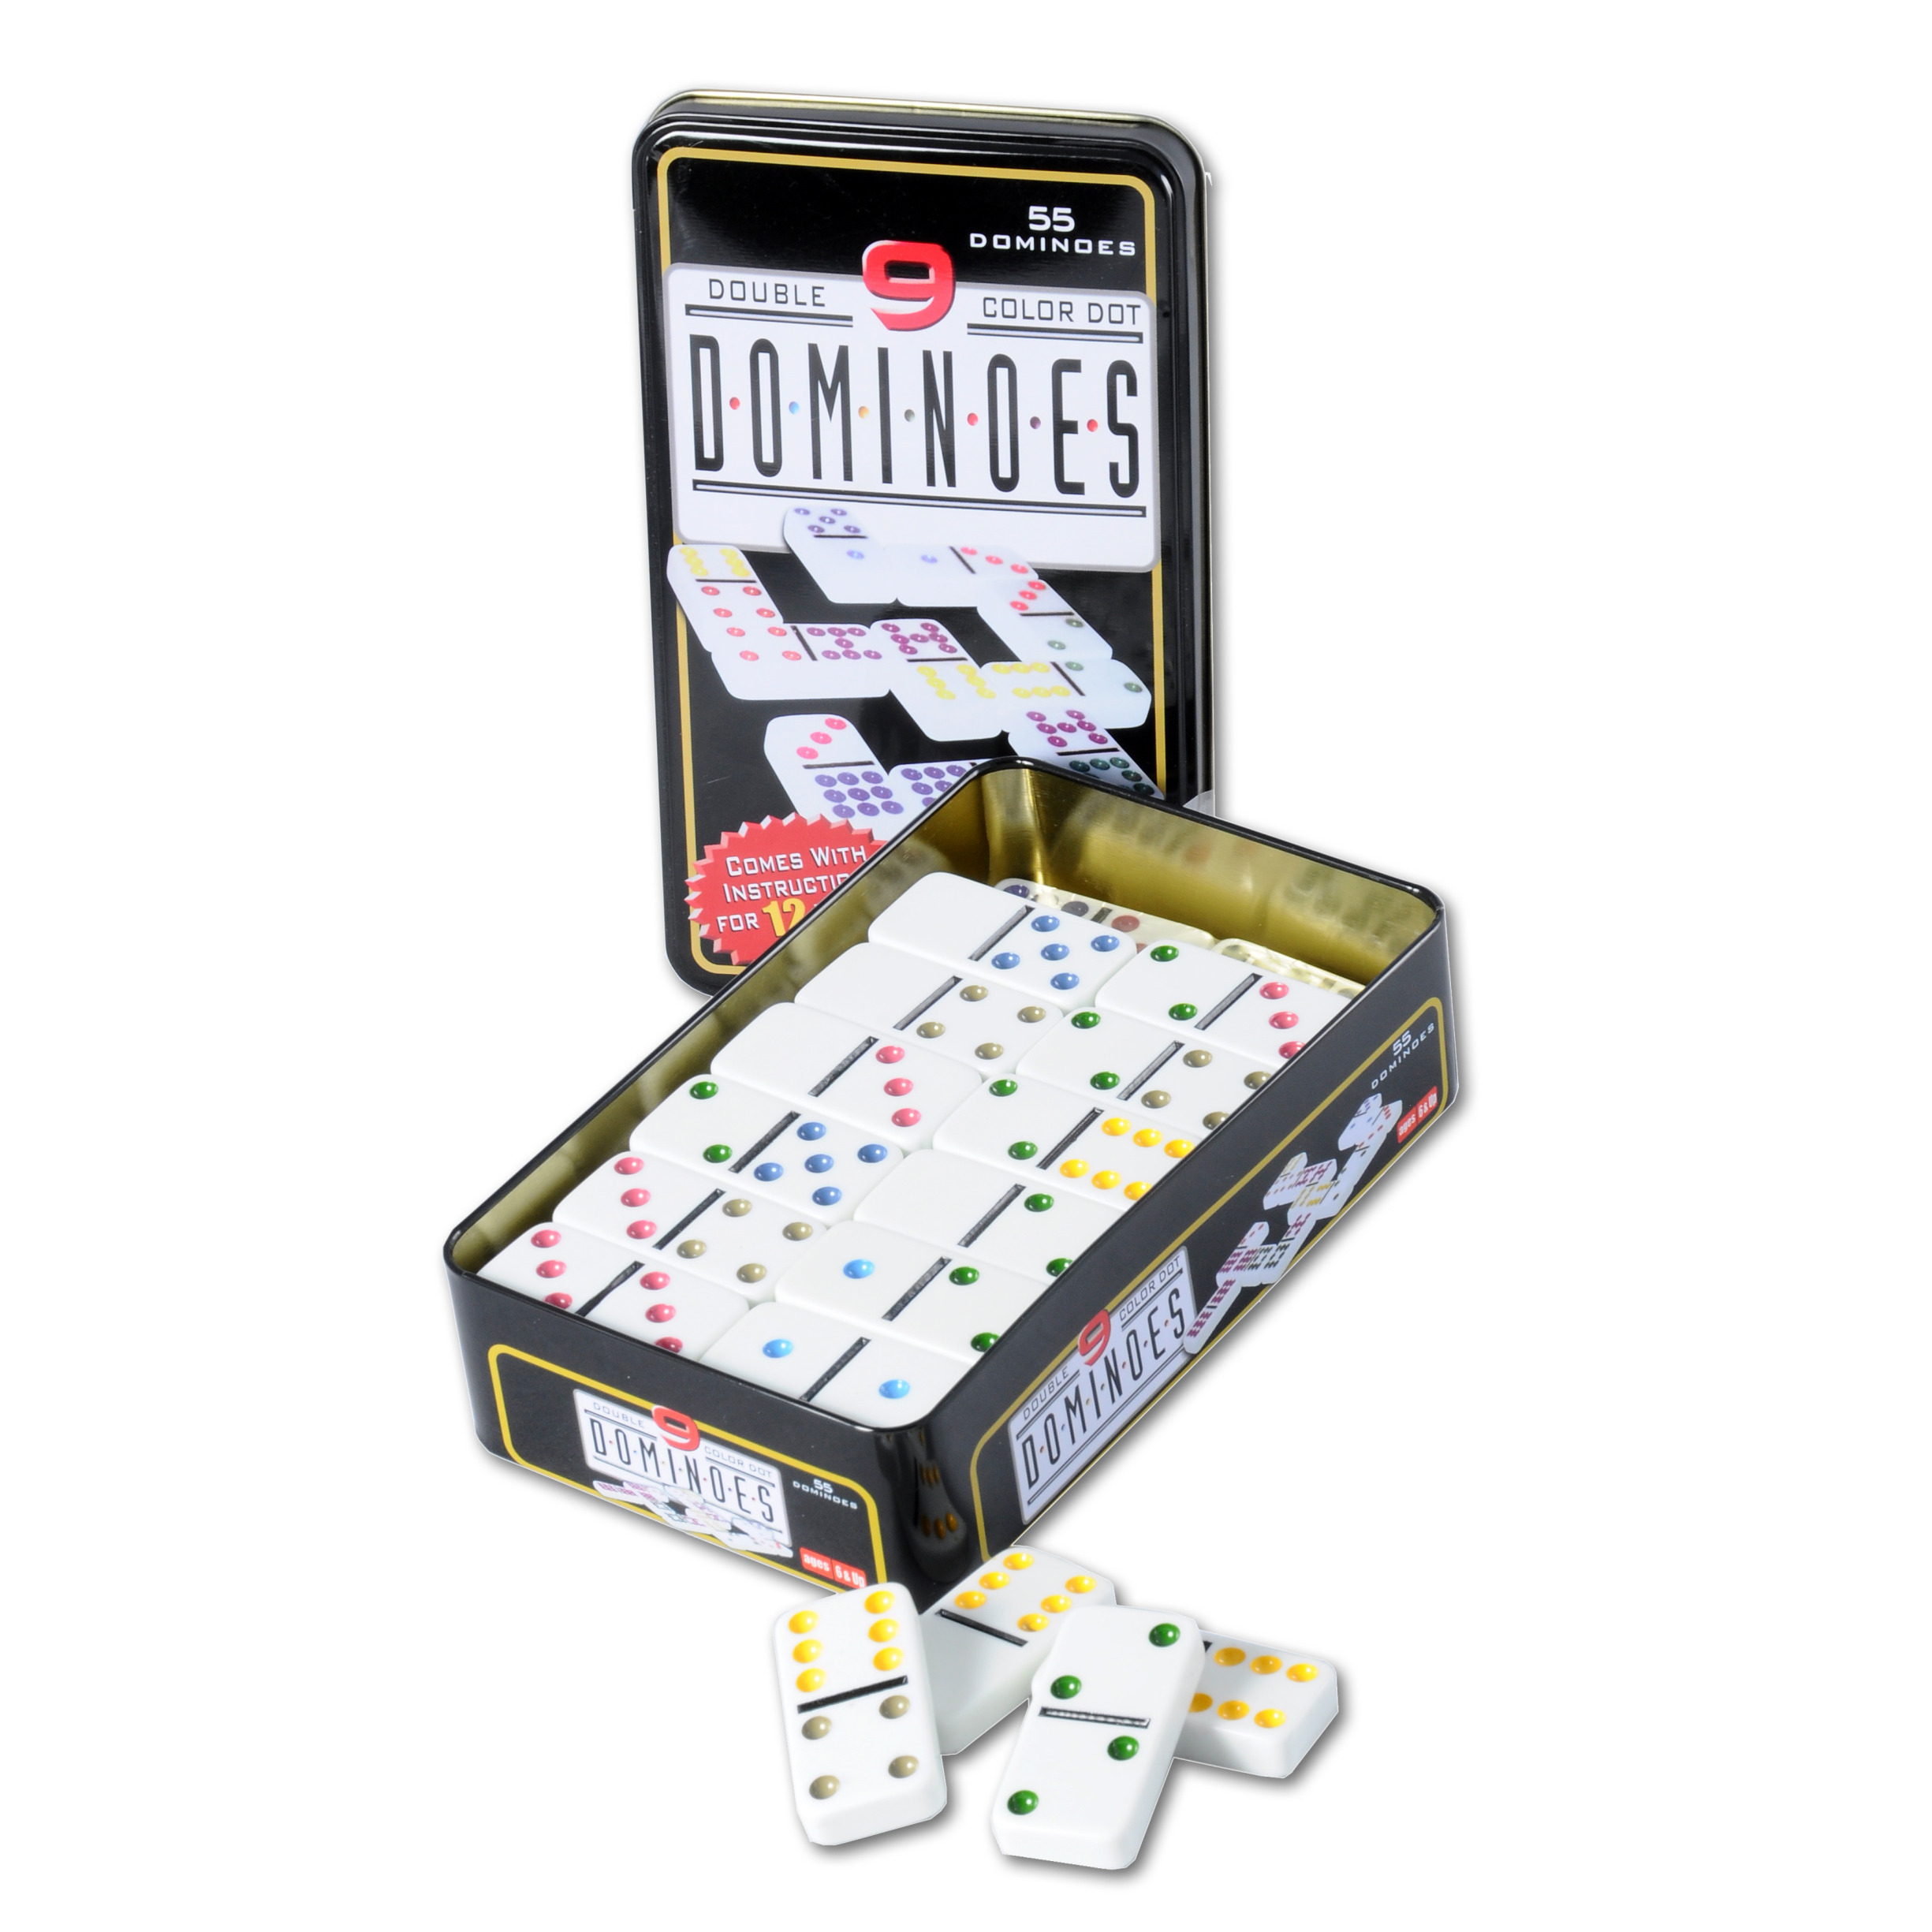 Domino spel dubbel/double 9 in blik 55x stenen